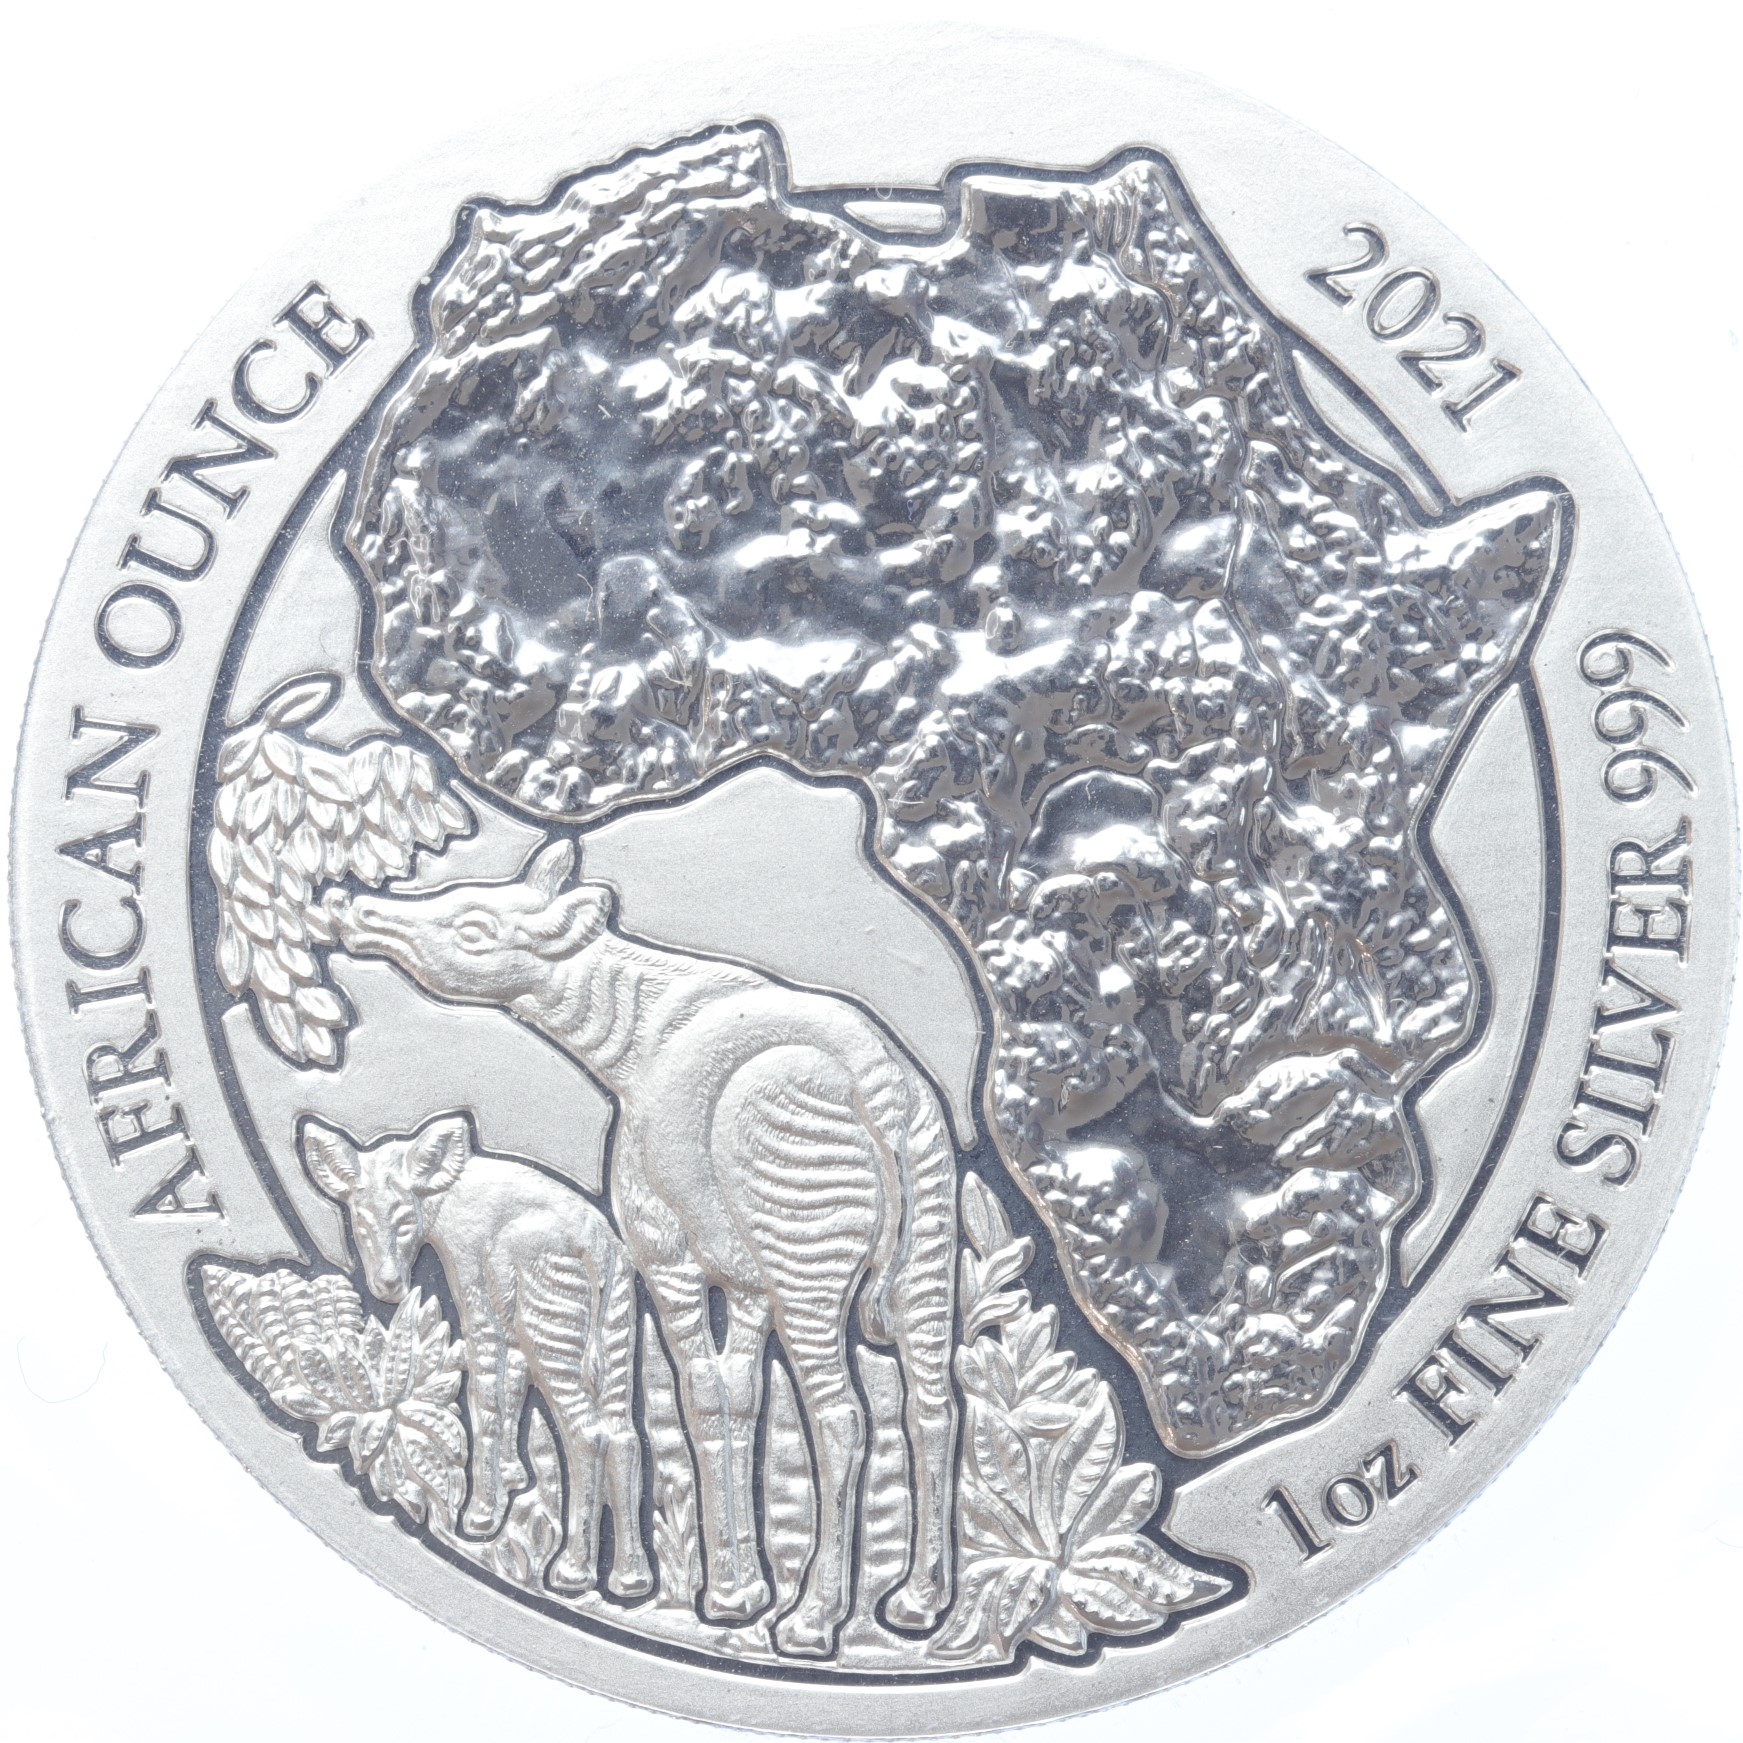 Rwanda Okapi 2021 1 ounce silver